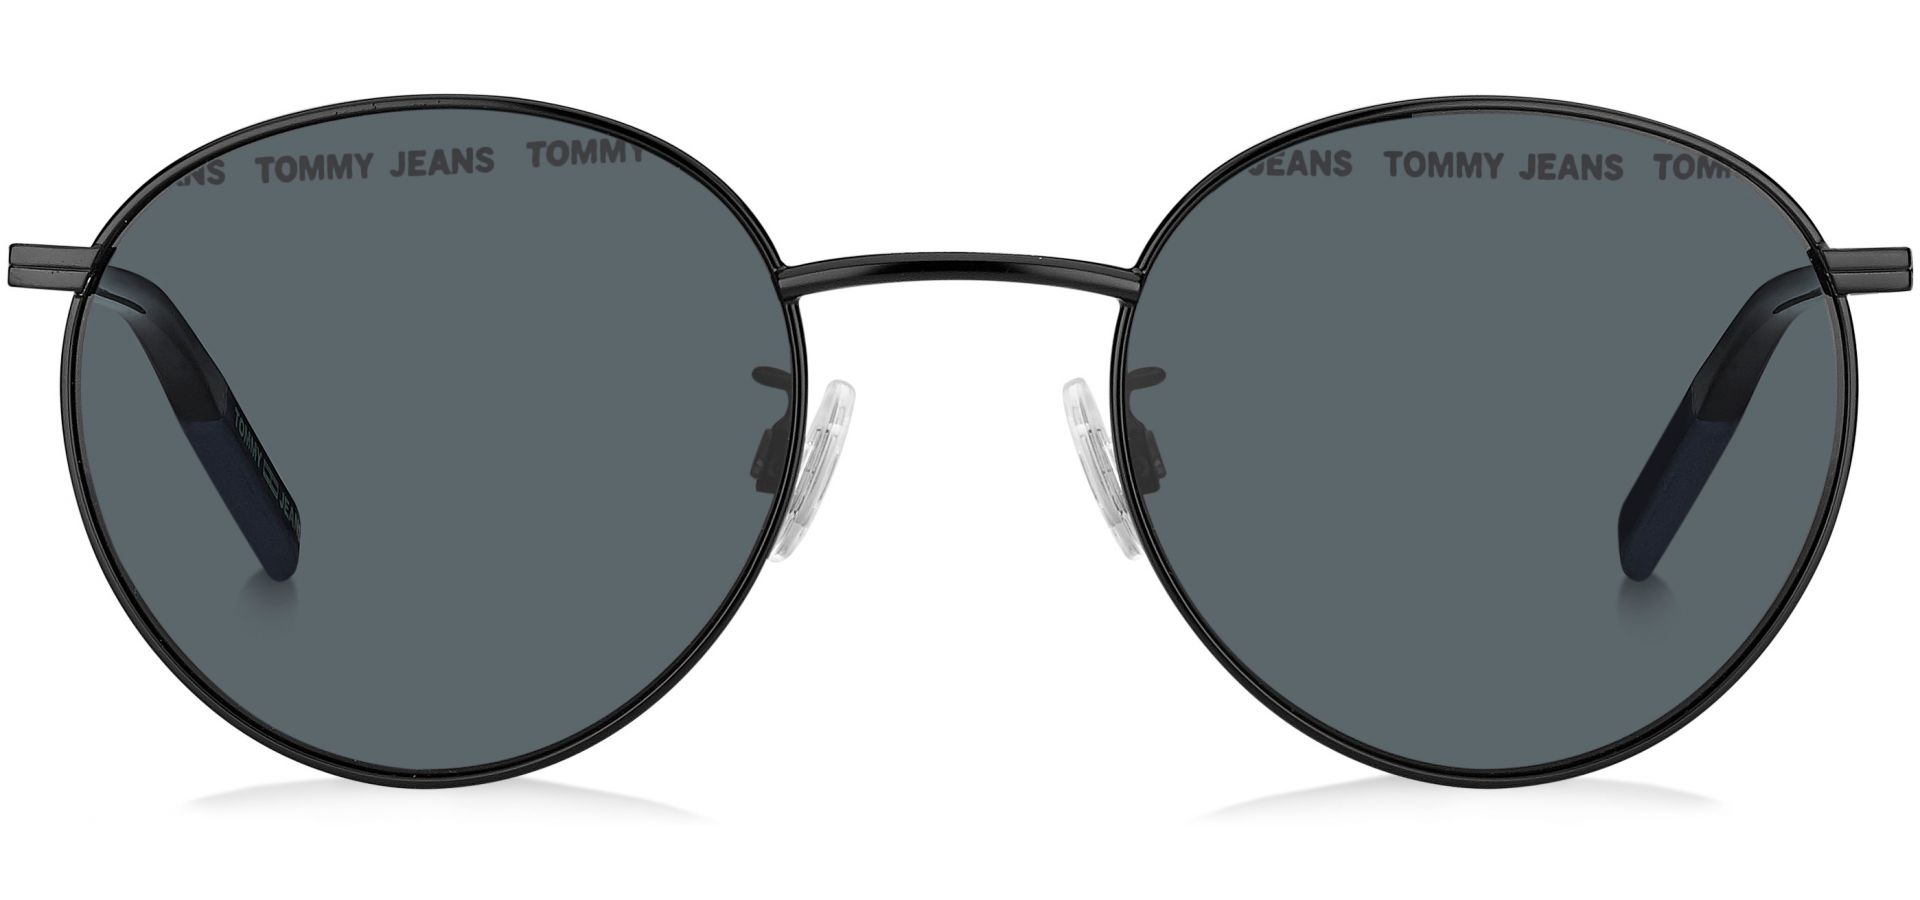 Sunčane naočale TOMMY JEANS TOMMY HILFIGER 0030: Boja: Black, Veličina: 50-121-45, Spol: unisex, Materijal: metal